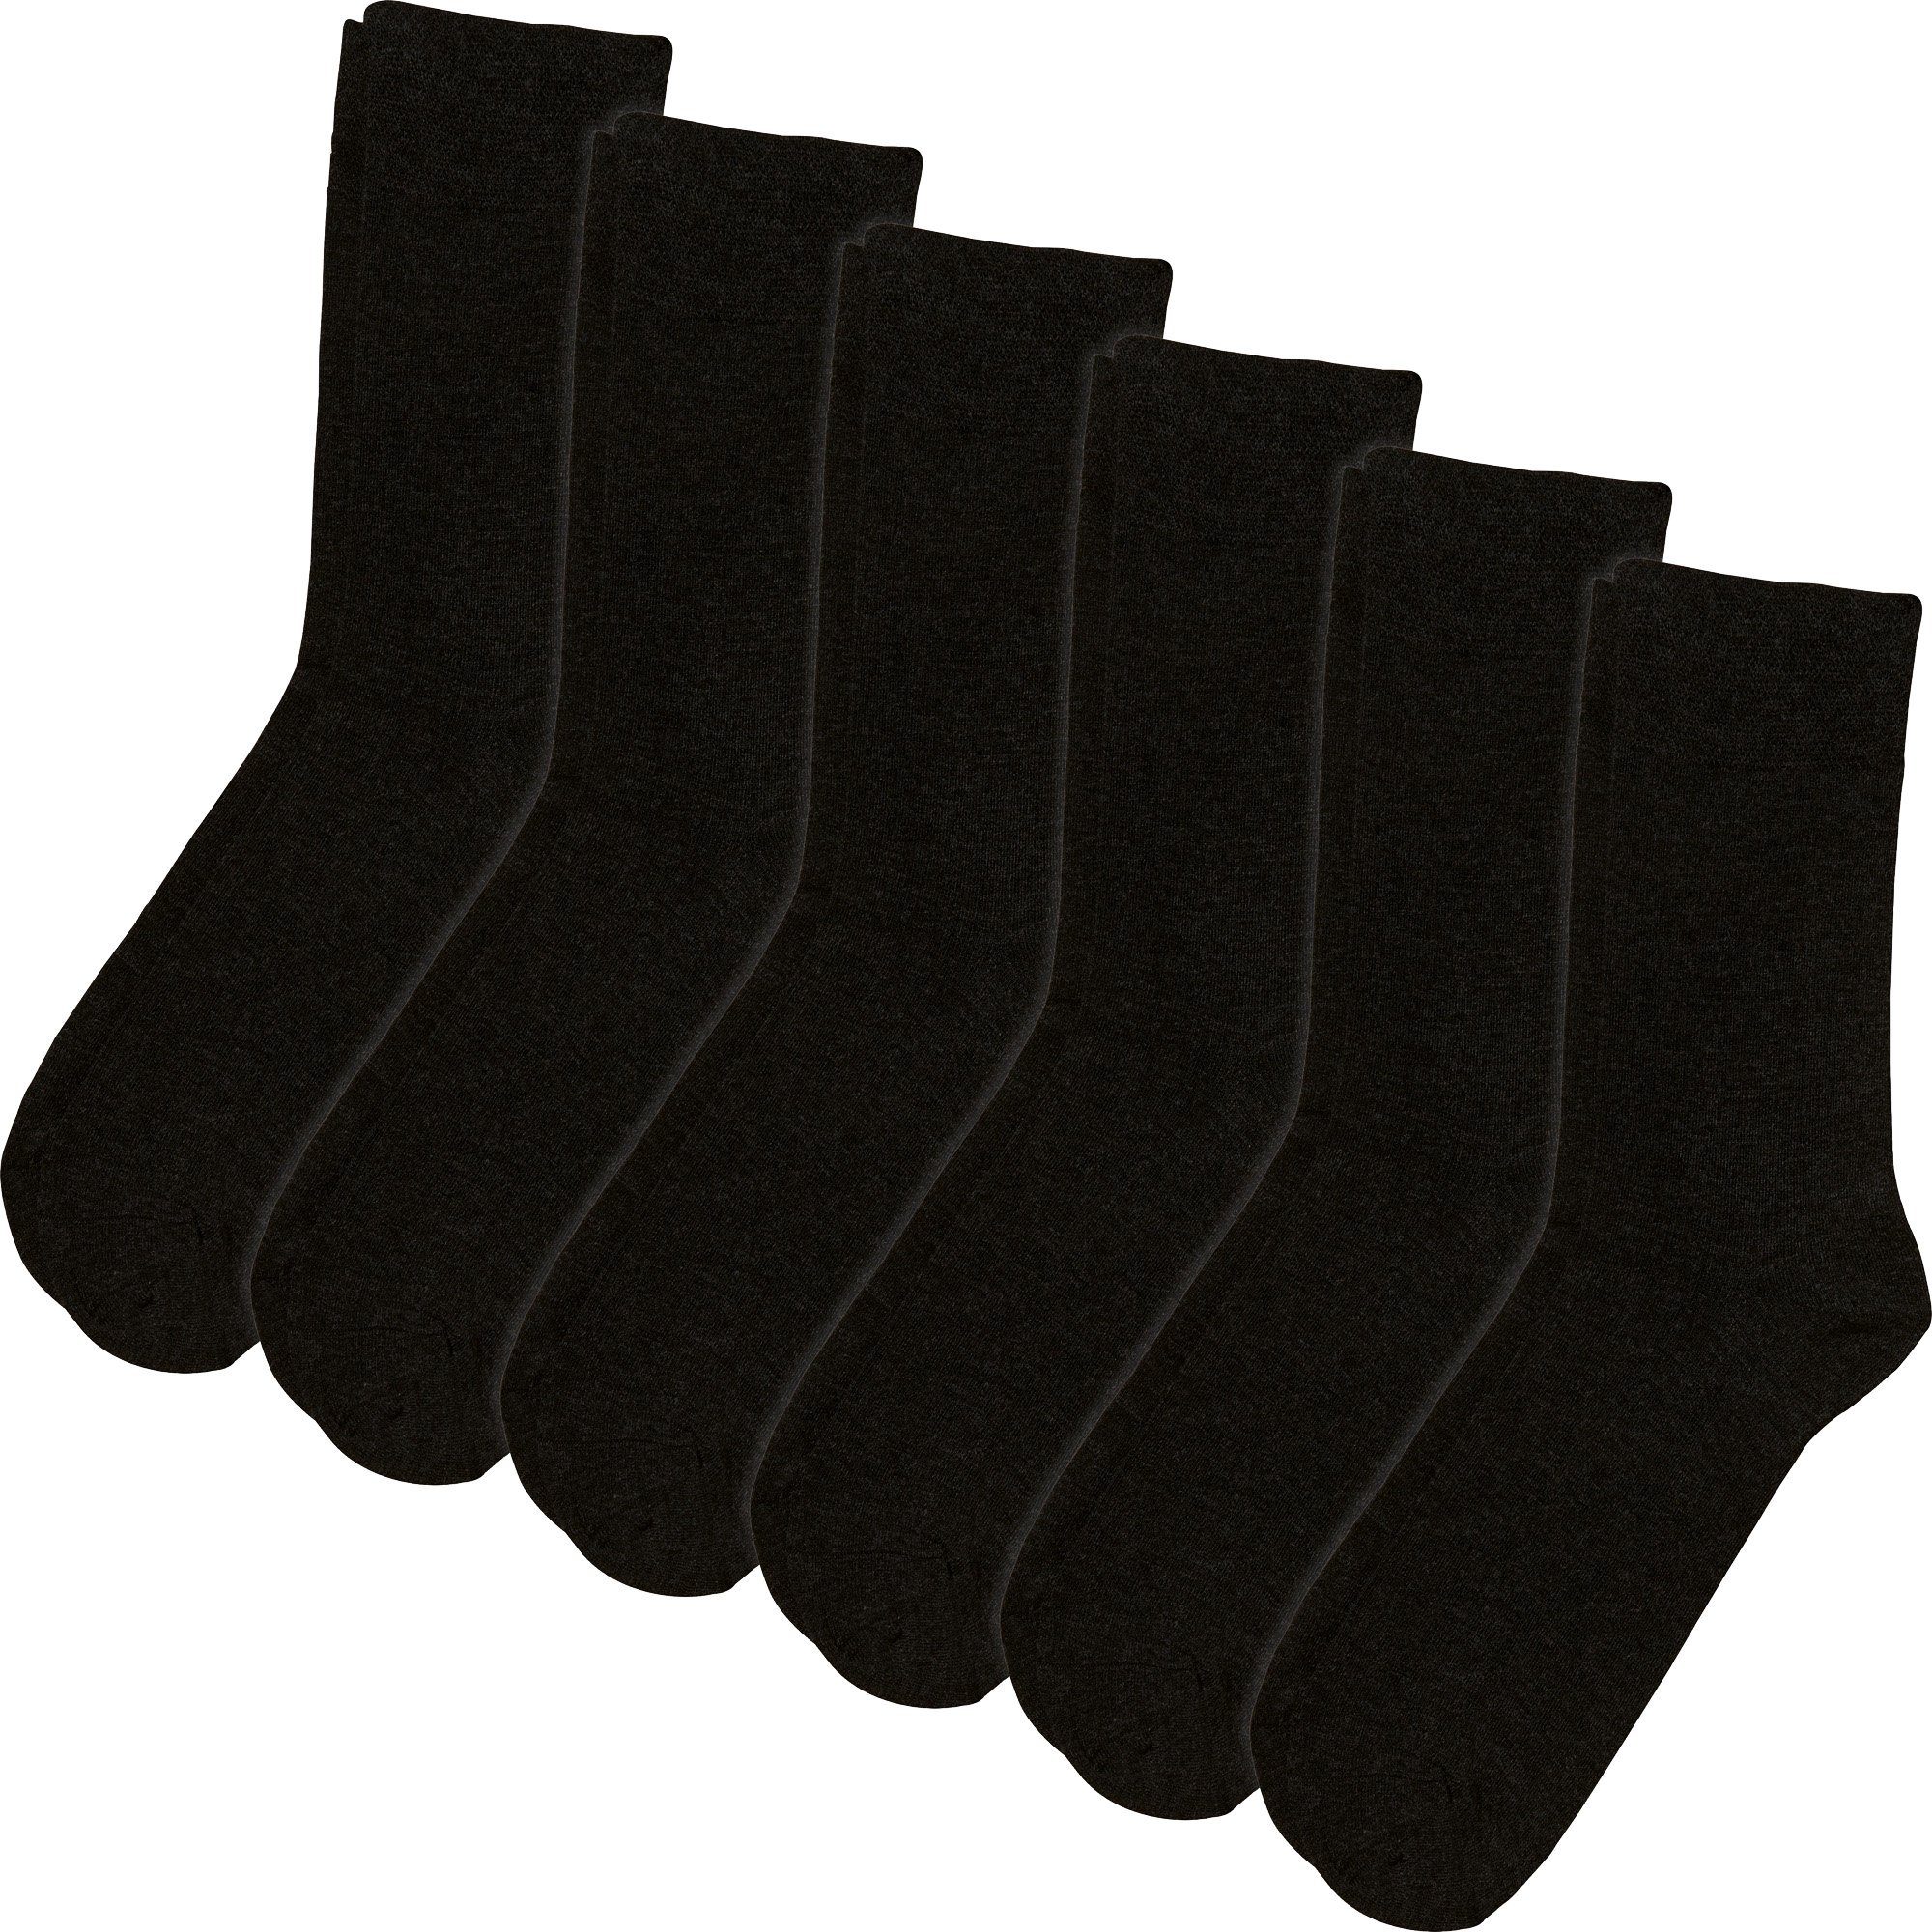 Erwin Müller Socken Herren-Socken 6 Paar (12-Paar) Uni schwarz